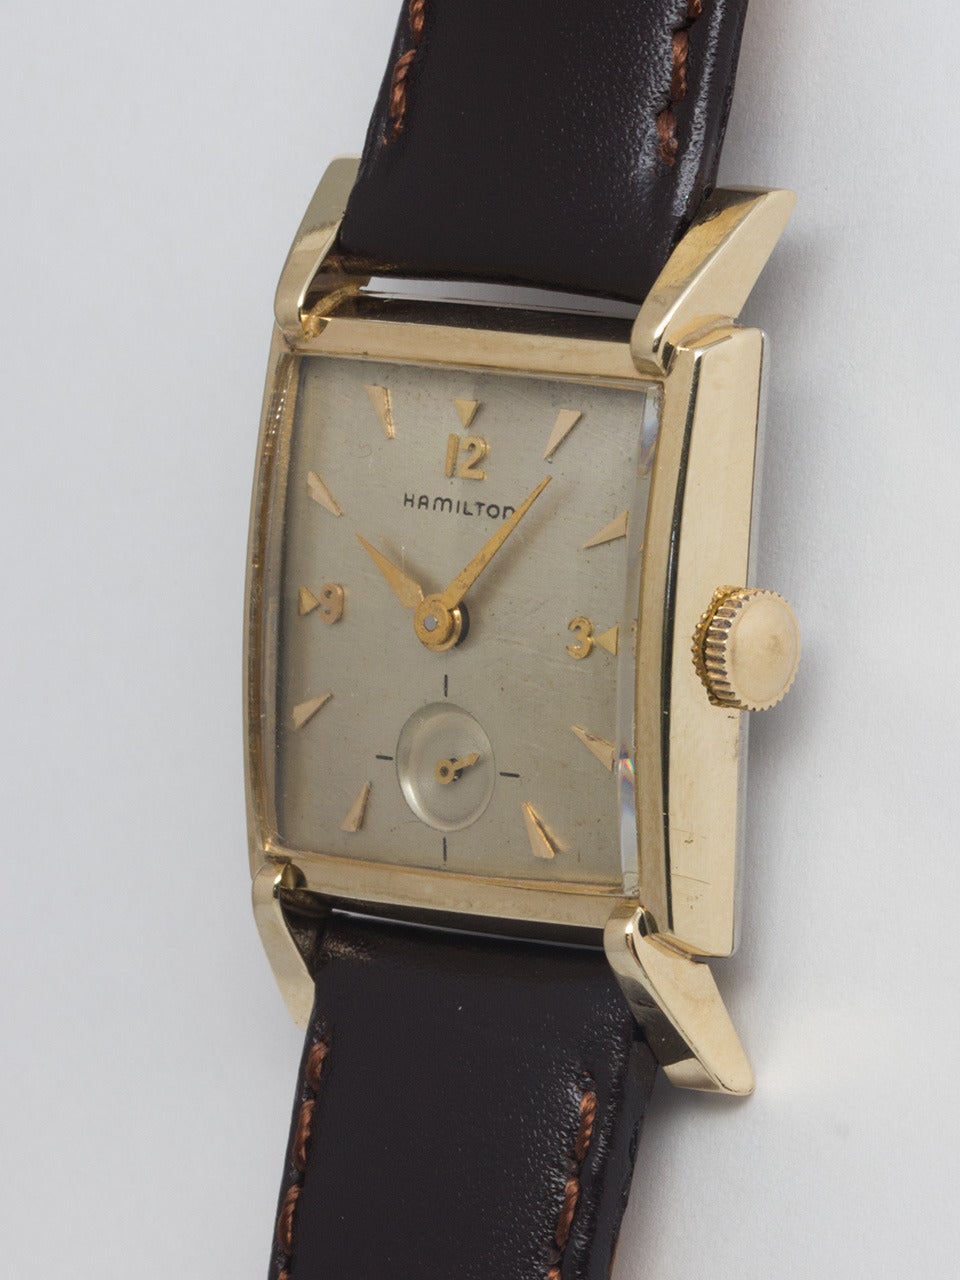 1950 hamilton watch catalog